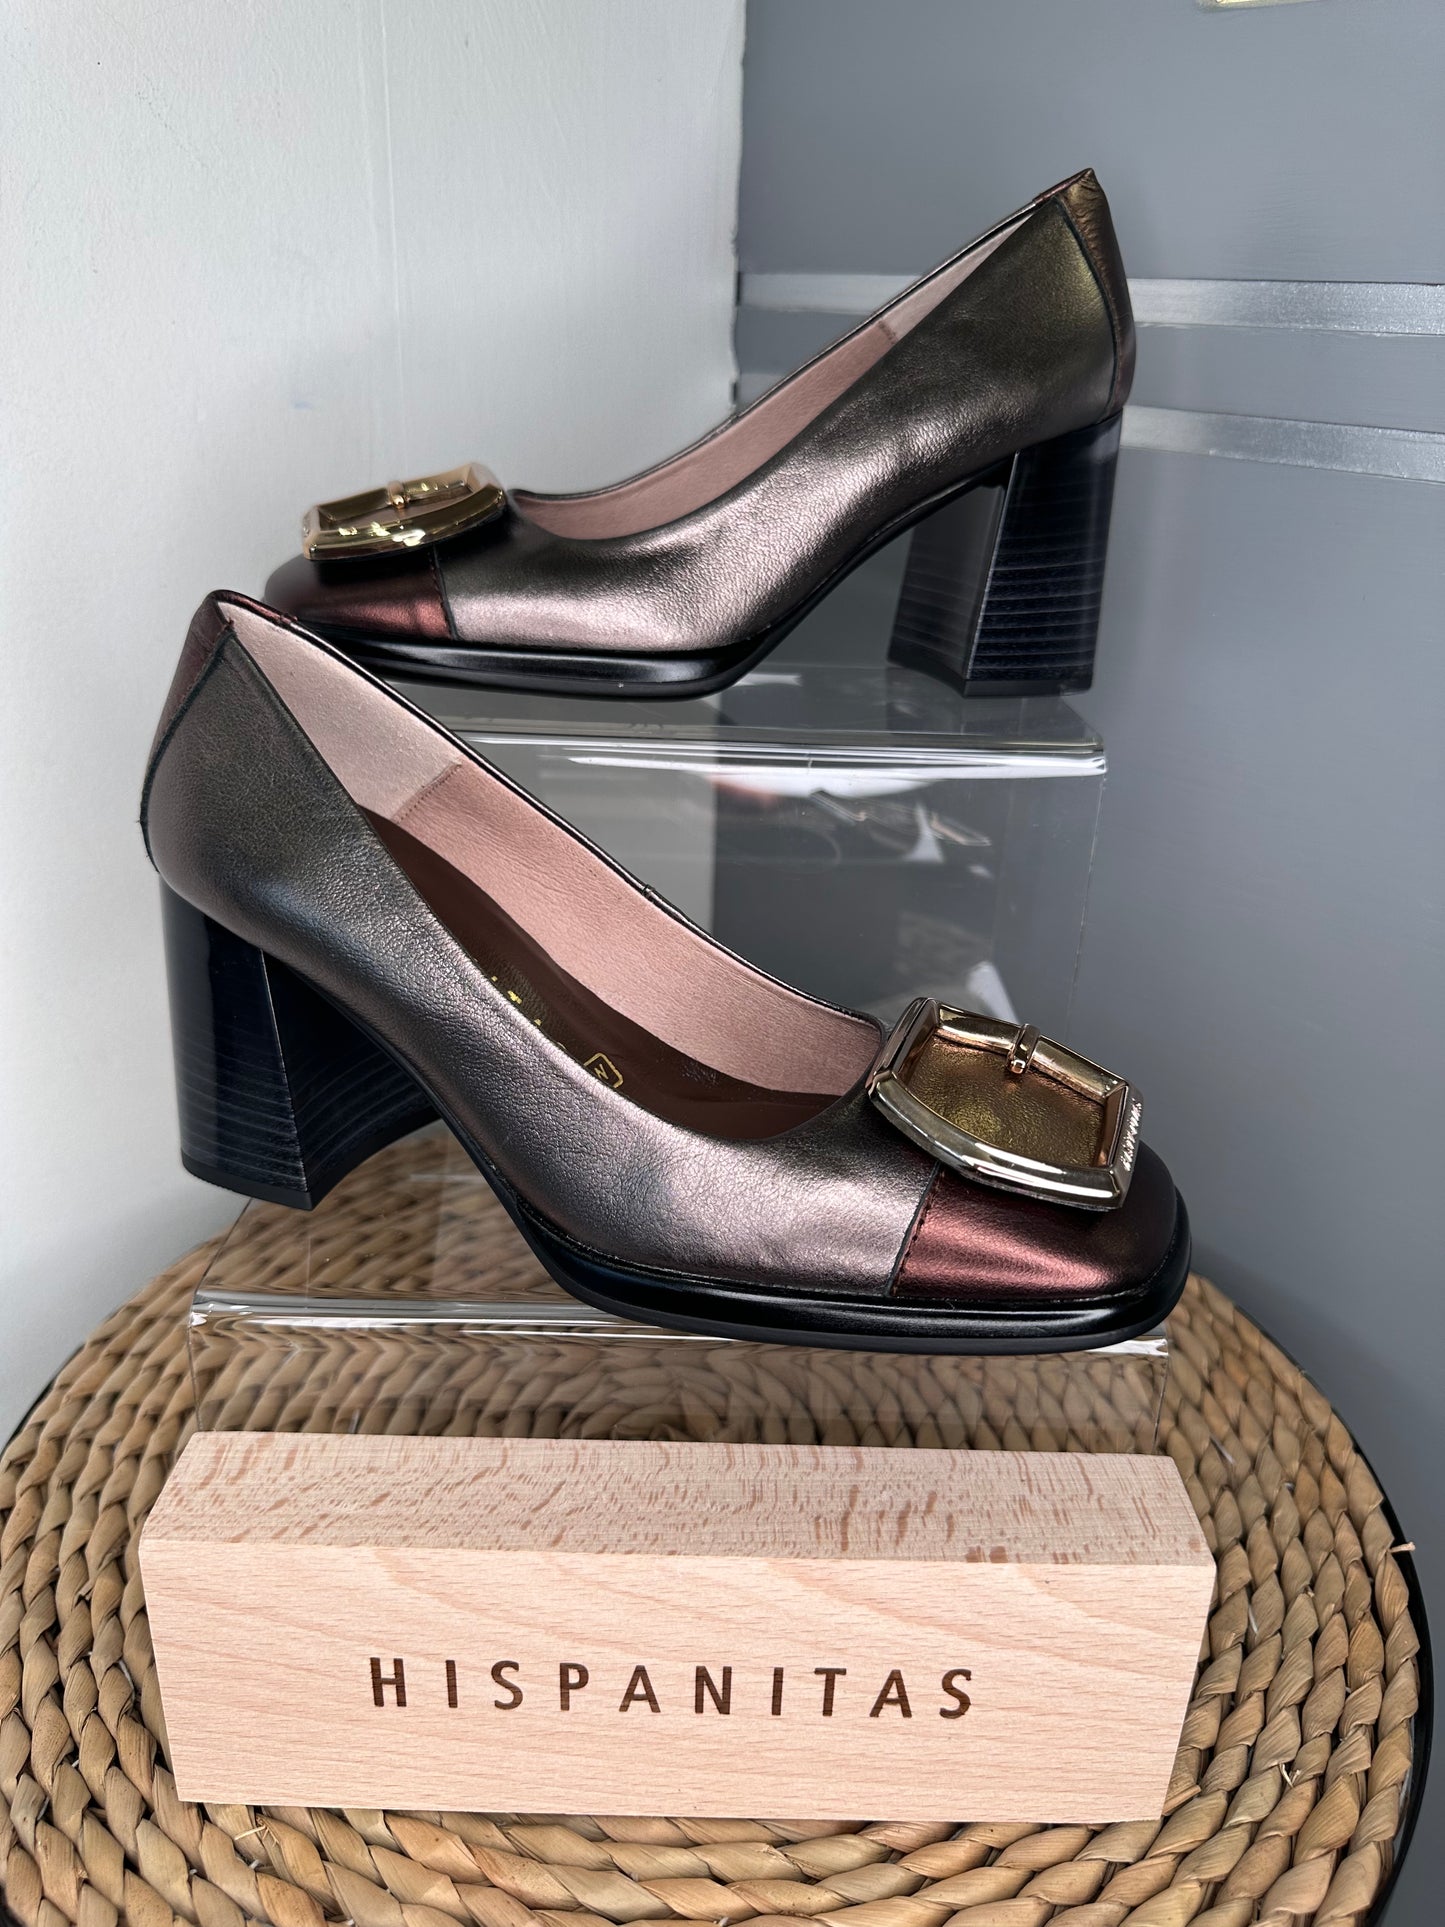 Hispanitas -Multi Metallic Court Shoe With Block Heel & Gold Square Trim